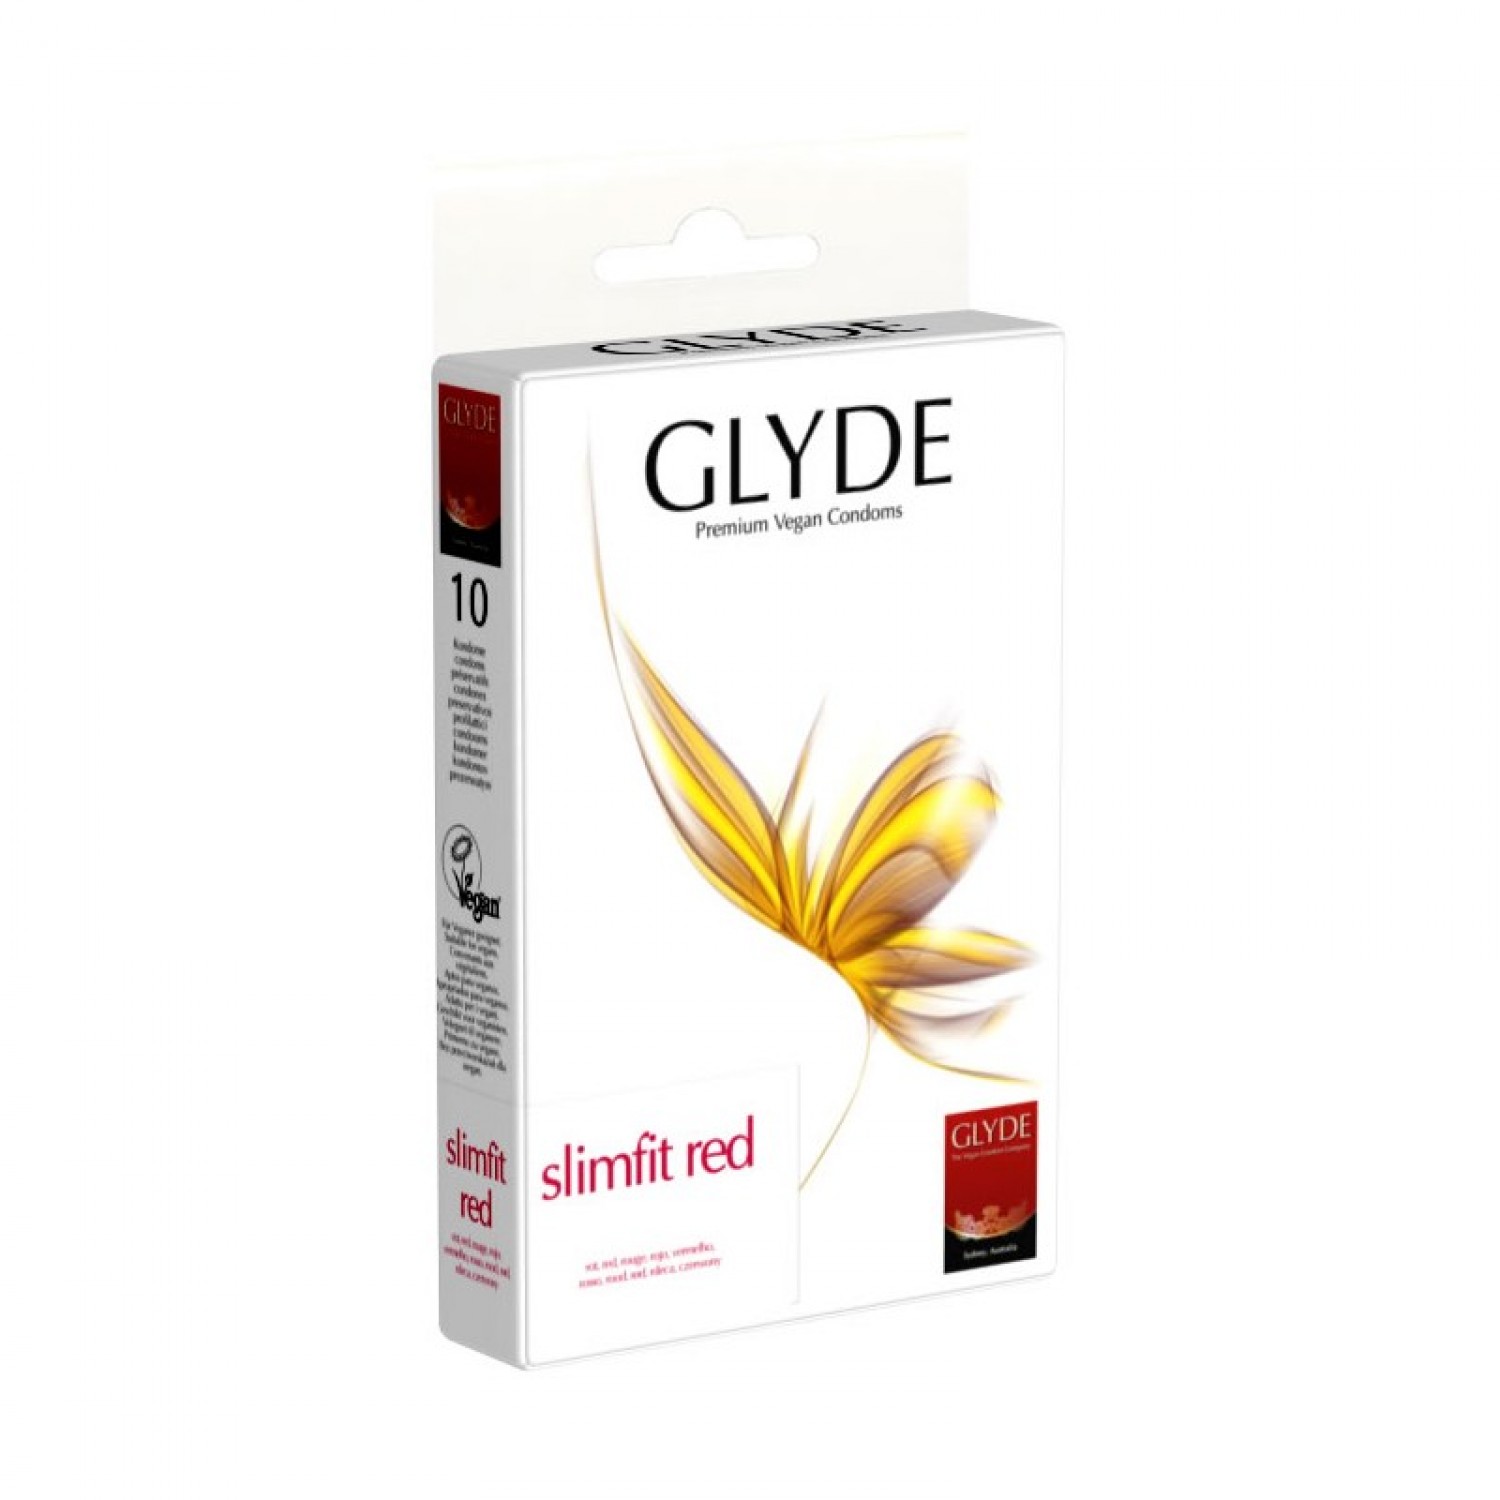 Vegan Condoms Slimfit Red of Natural Rubber Latex | Glyde